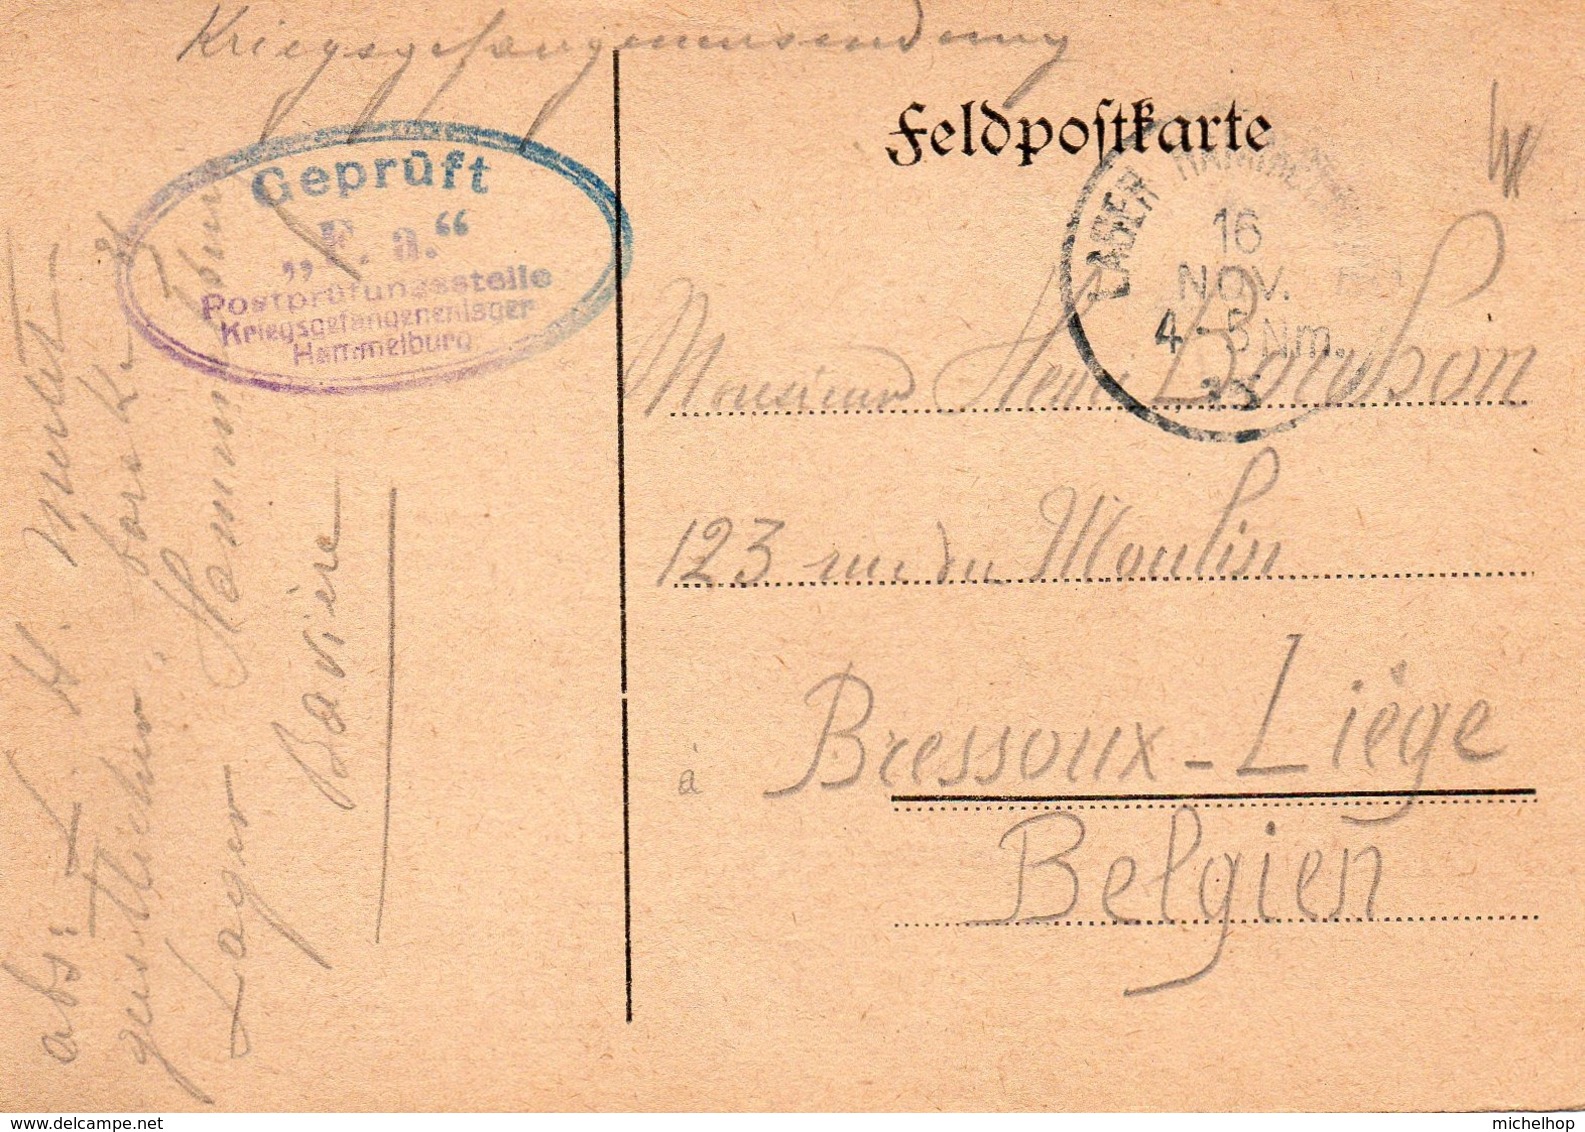 Feldpostkarte Expédiée Par Un Prisonnier Du Camp De Hammelburg Vers Bressoux-Liège - Prisoners